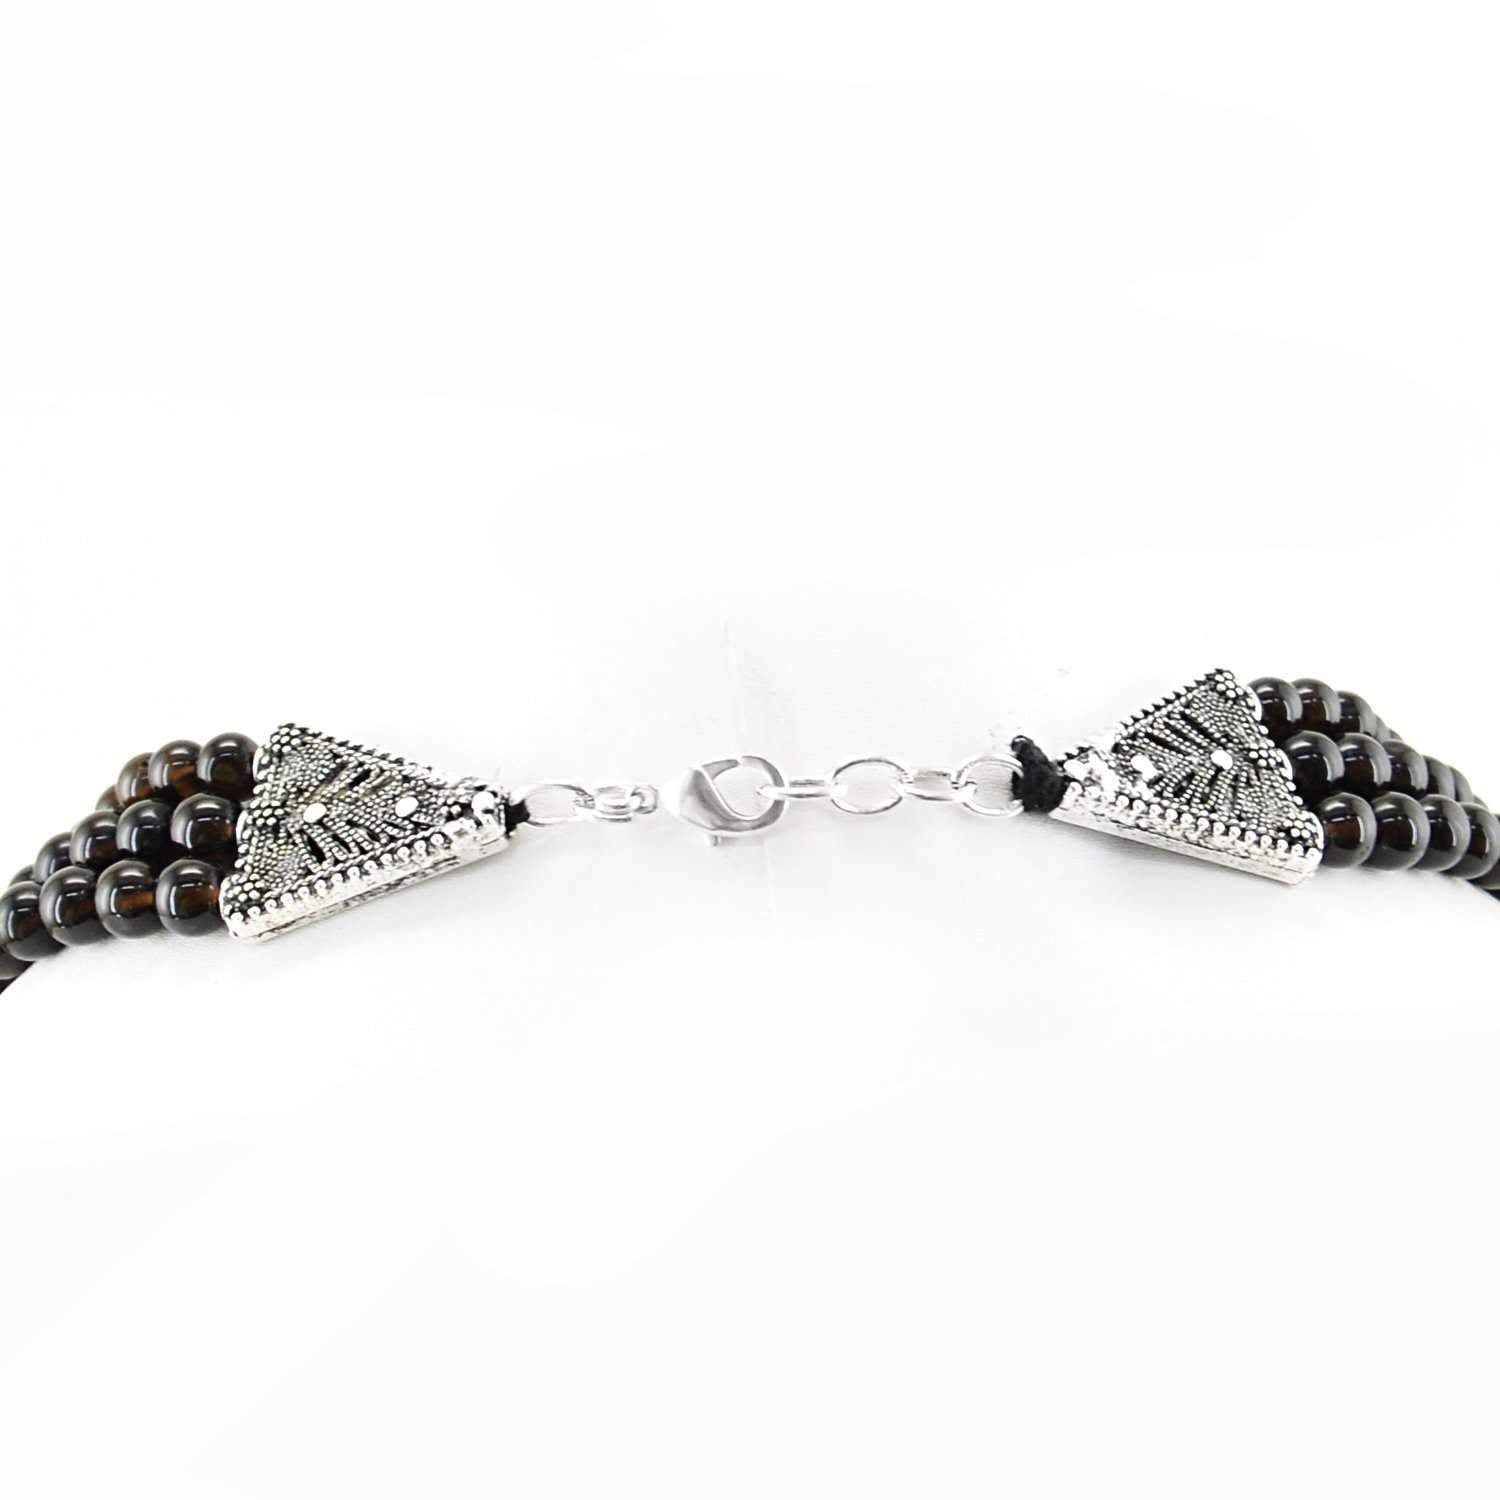 gemsmore:Natural Black Smoky Quartz Necklace 3 Strand - Round Beads